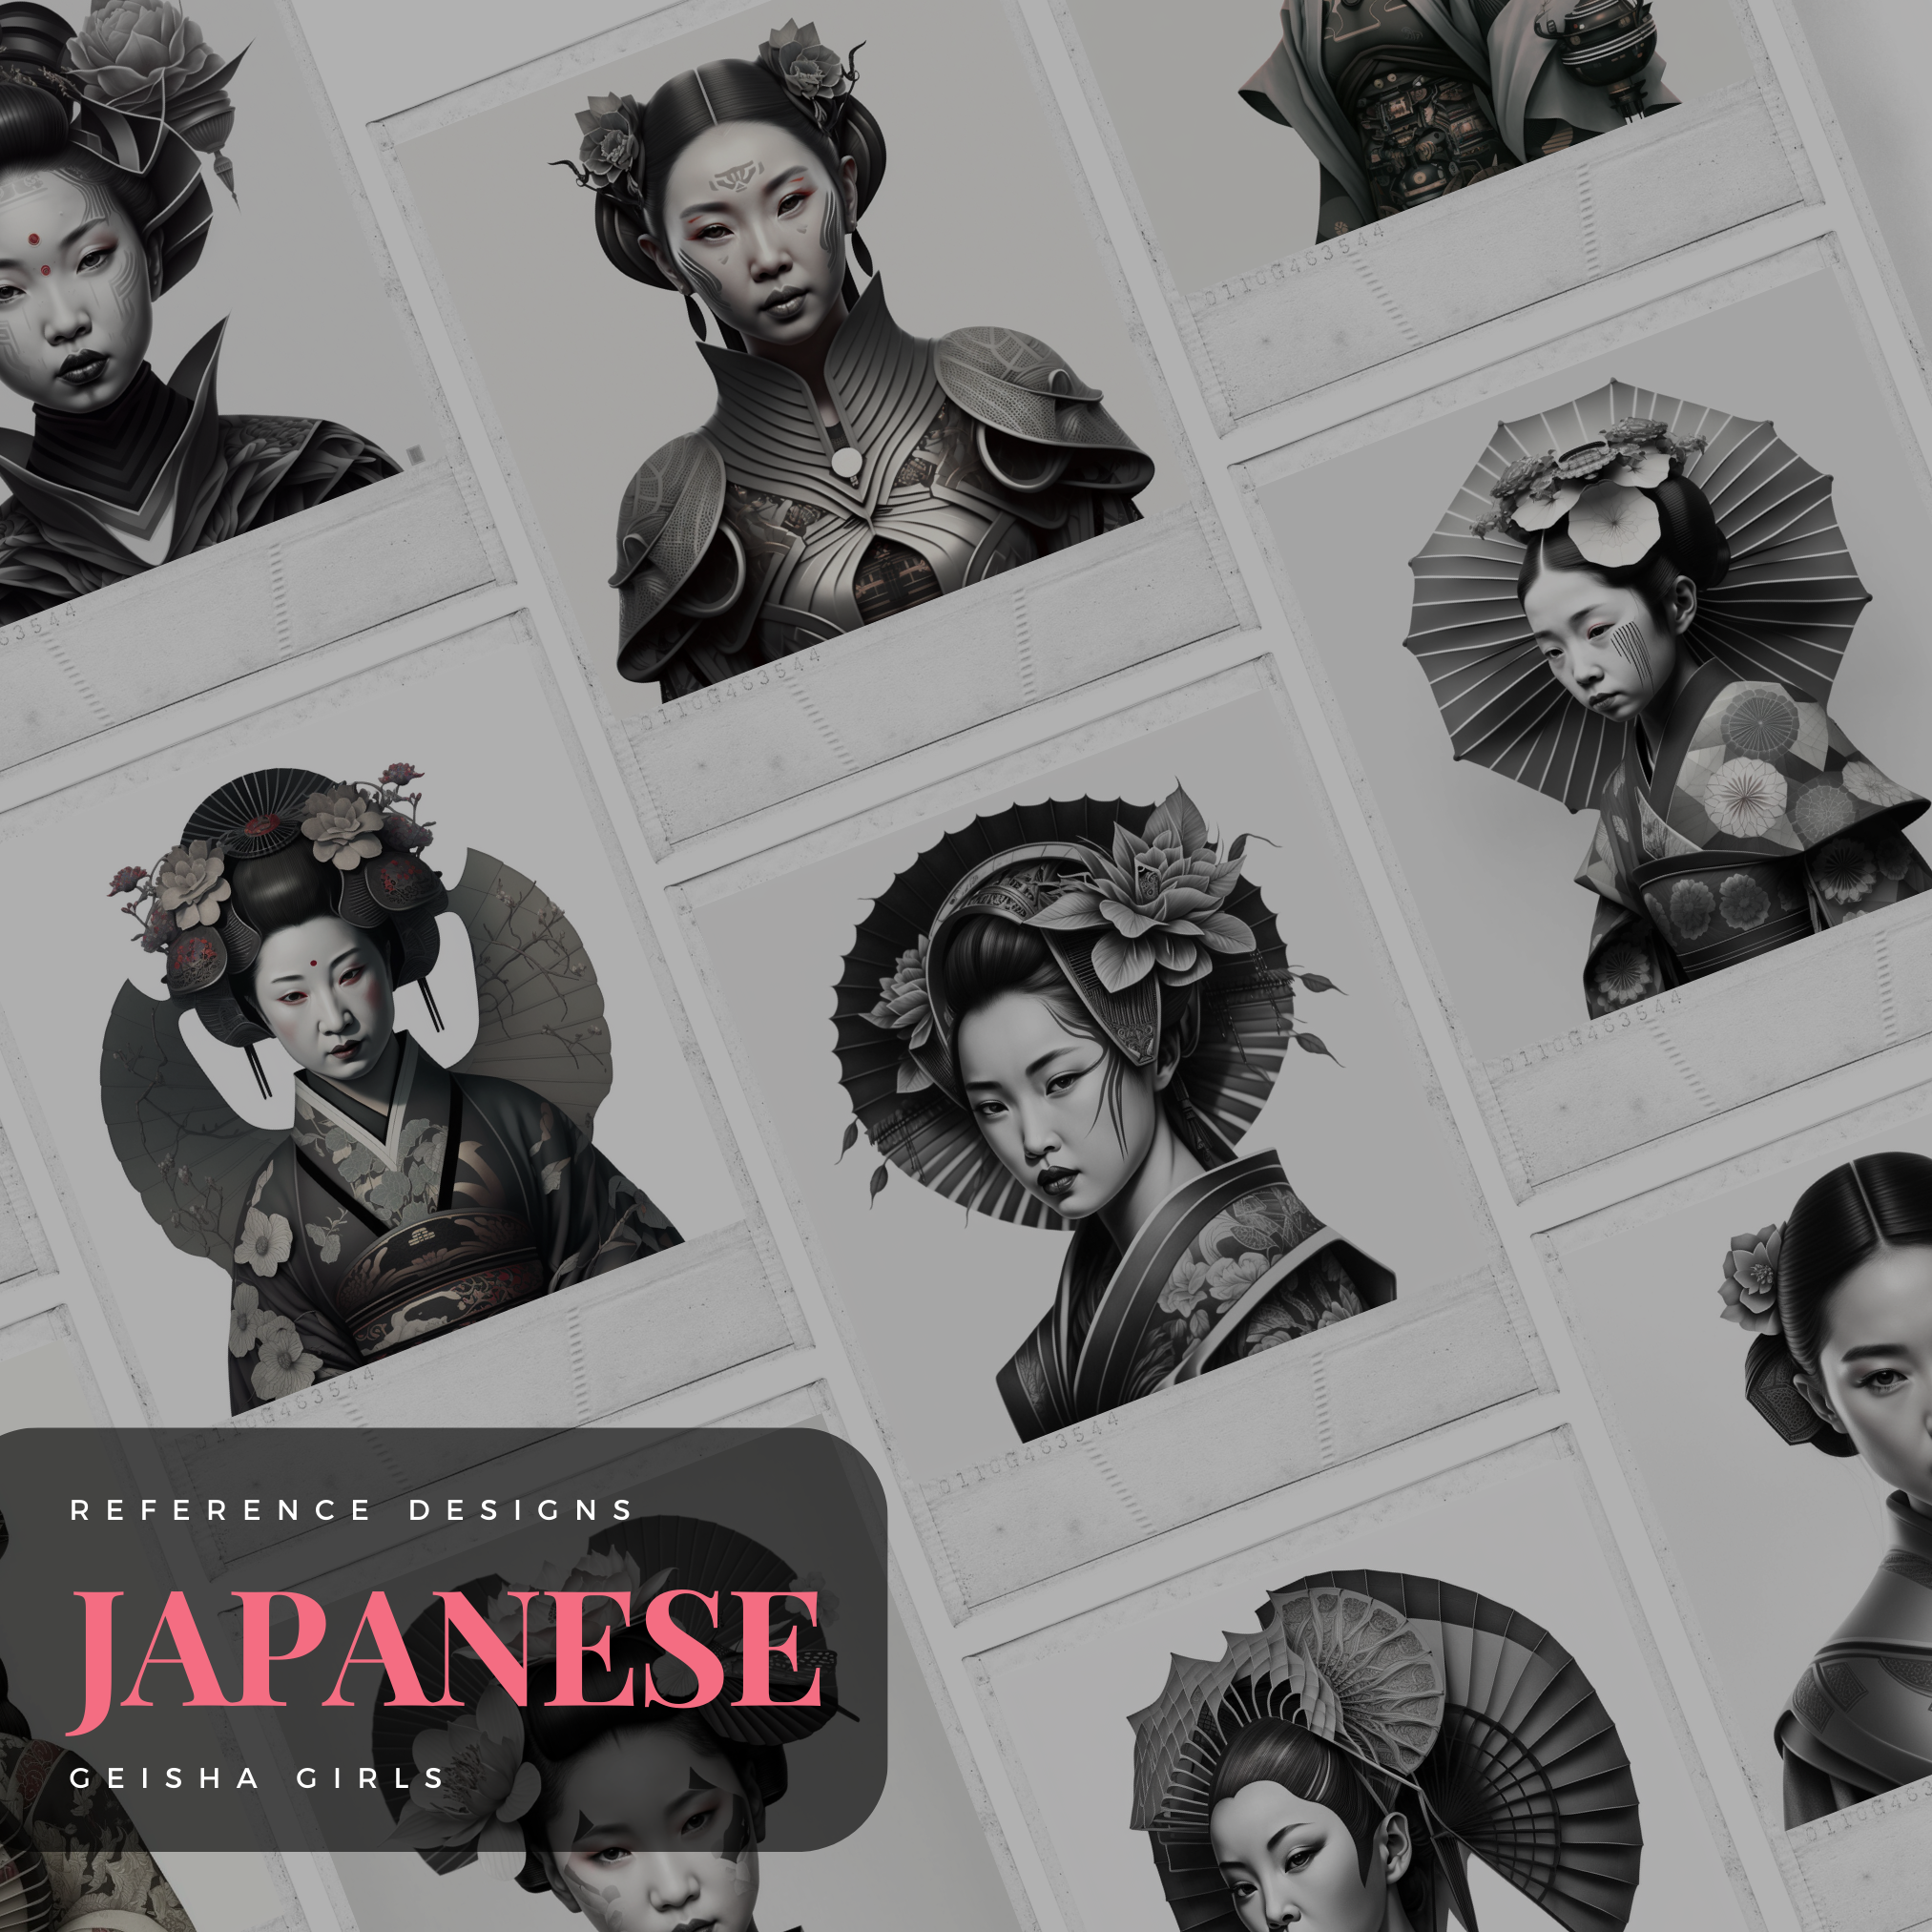 Geisha Girls Digital Reference Design Collection: 50 Procreate & Sketchbook Image